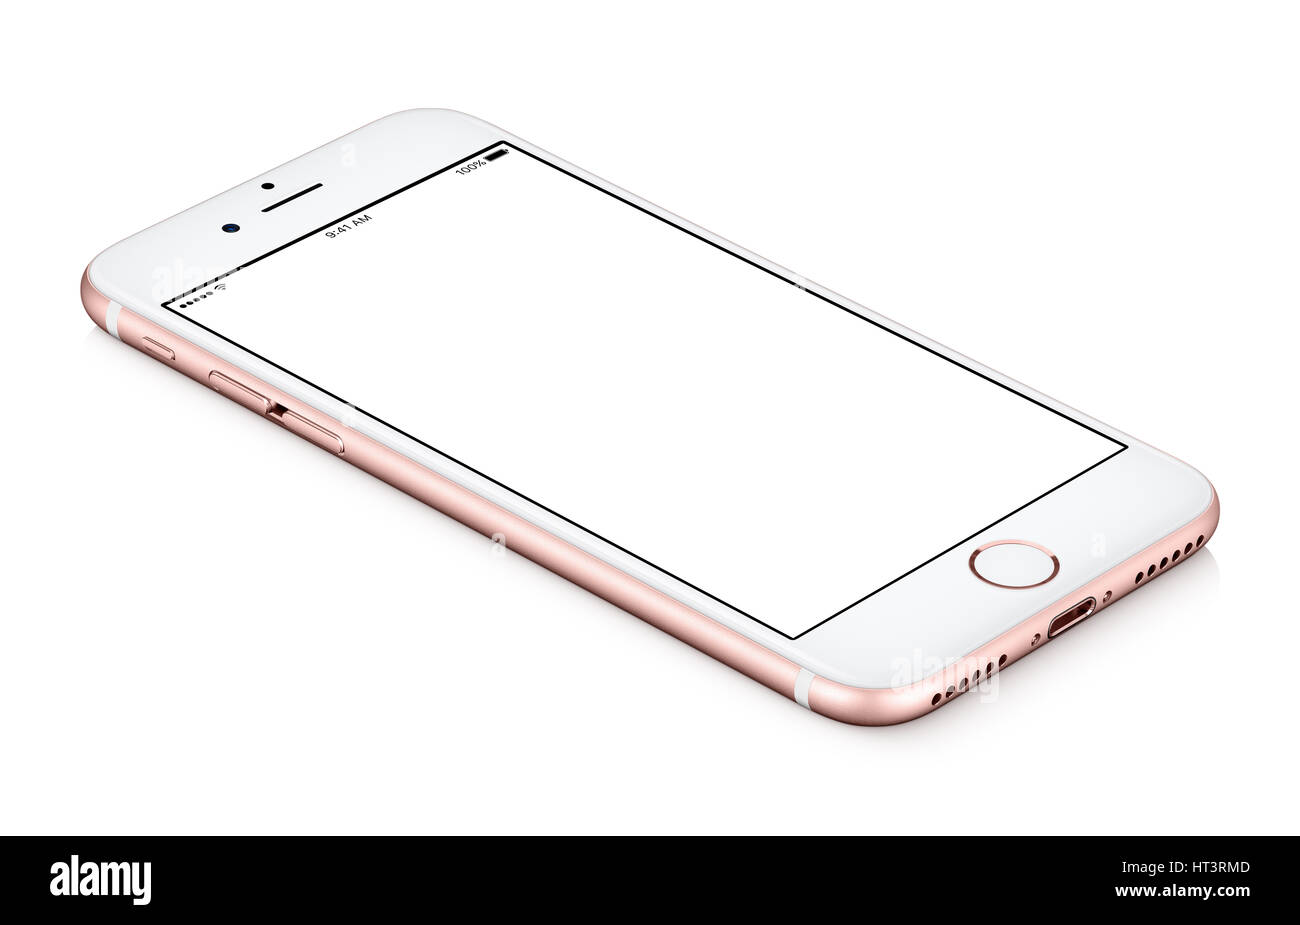 Rosa mobile smartphone mock-up ruotato in senso antiorario giace sulla superficie con schermo vuoto isolato su sfondo bianco. Foto Stock